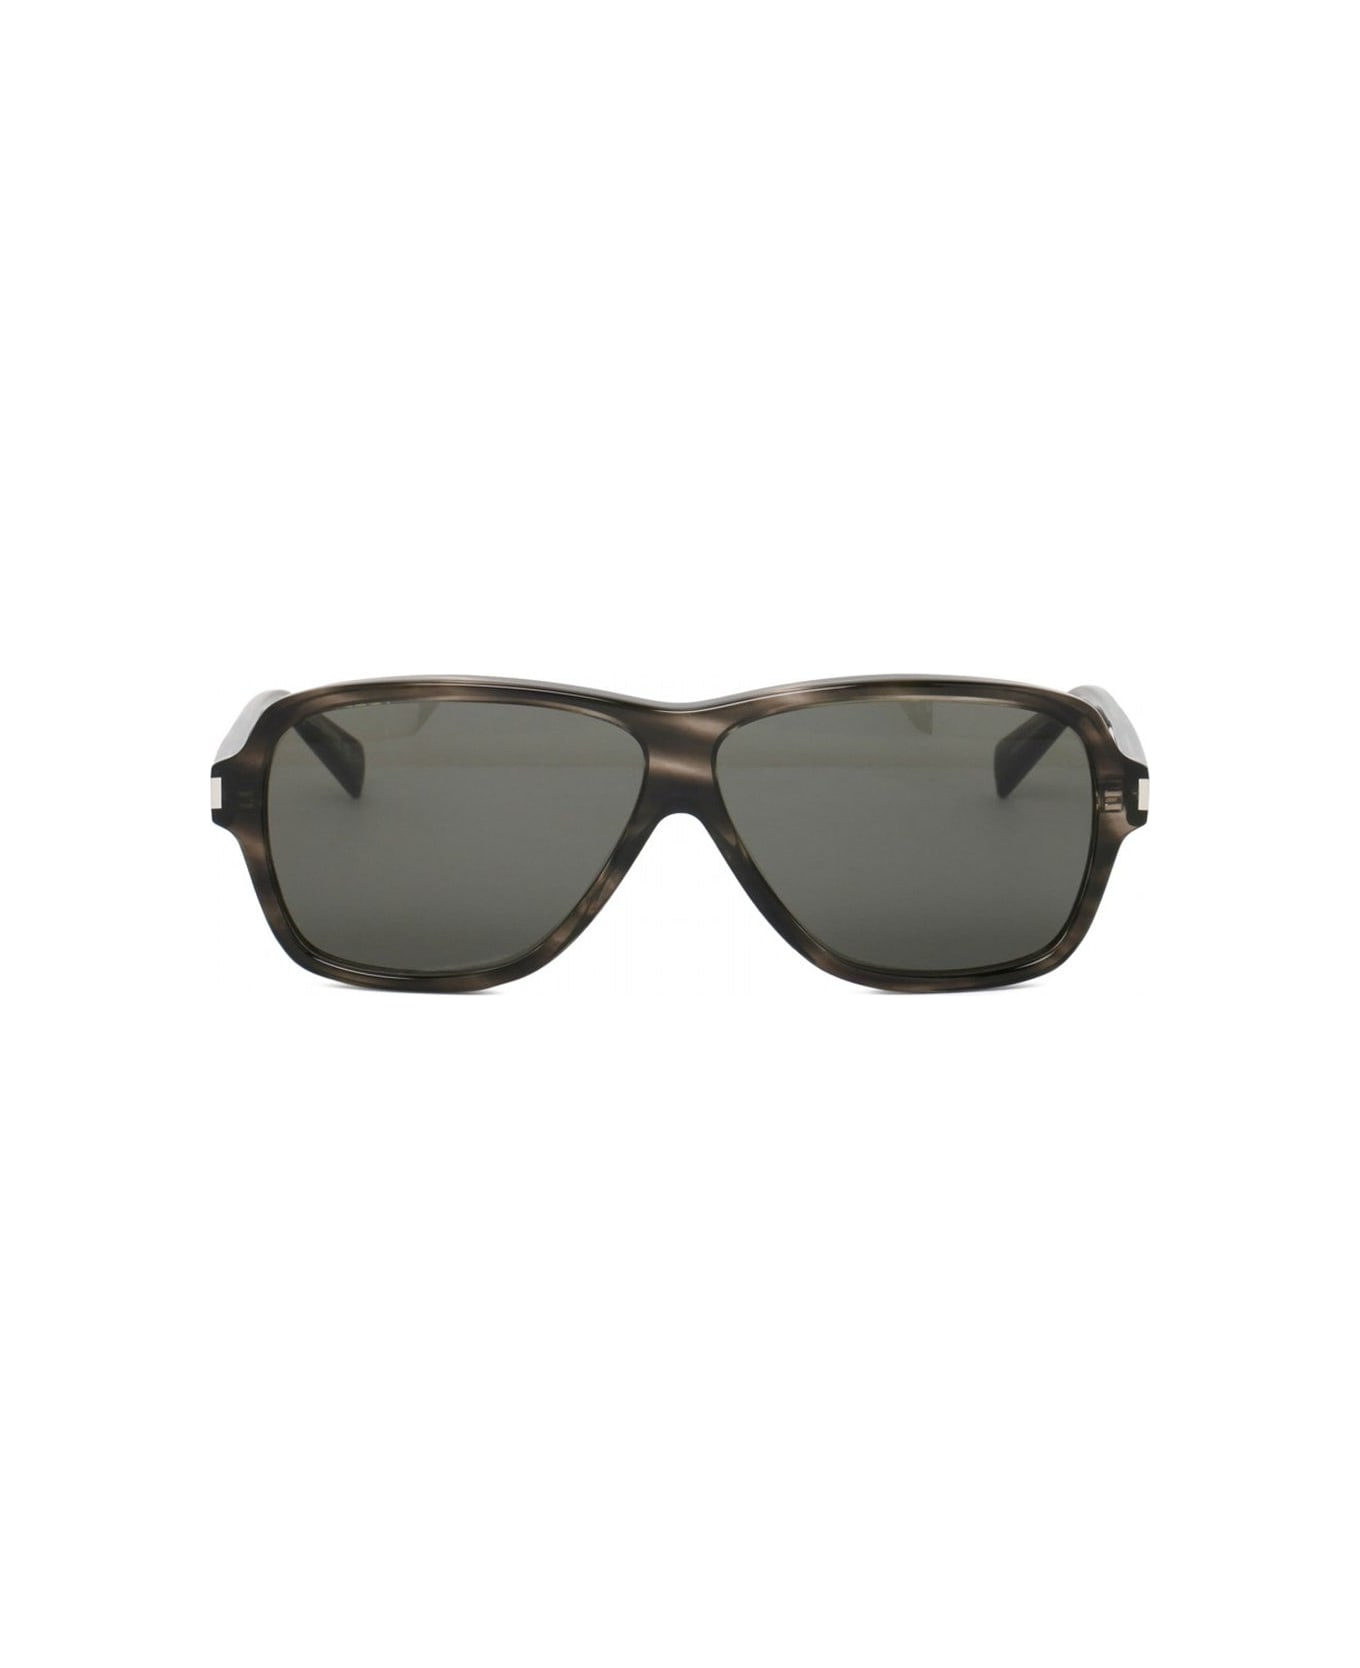 Saint Laurent 609 Aviator Sunglasses - Gray